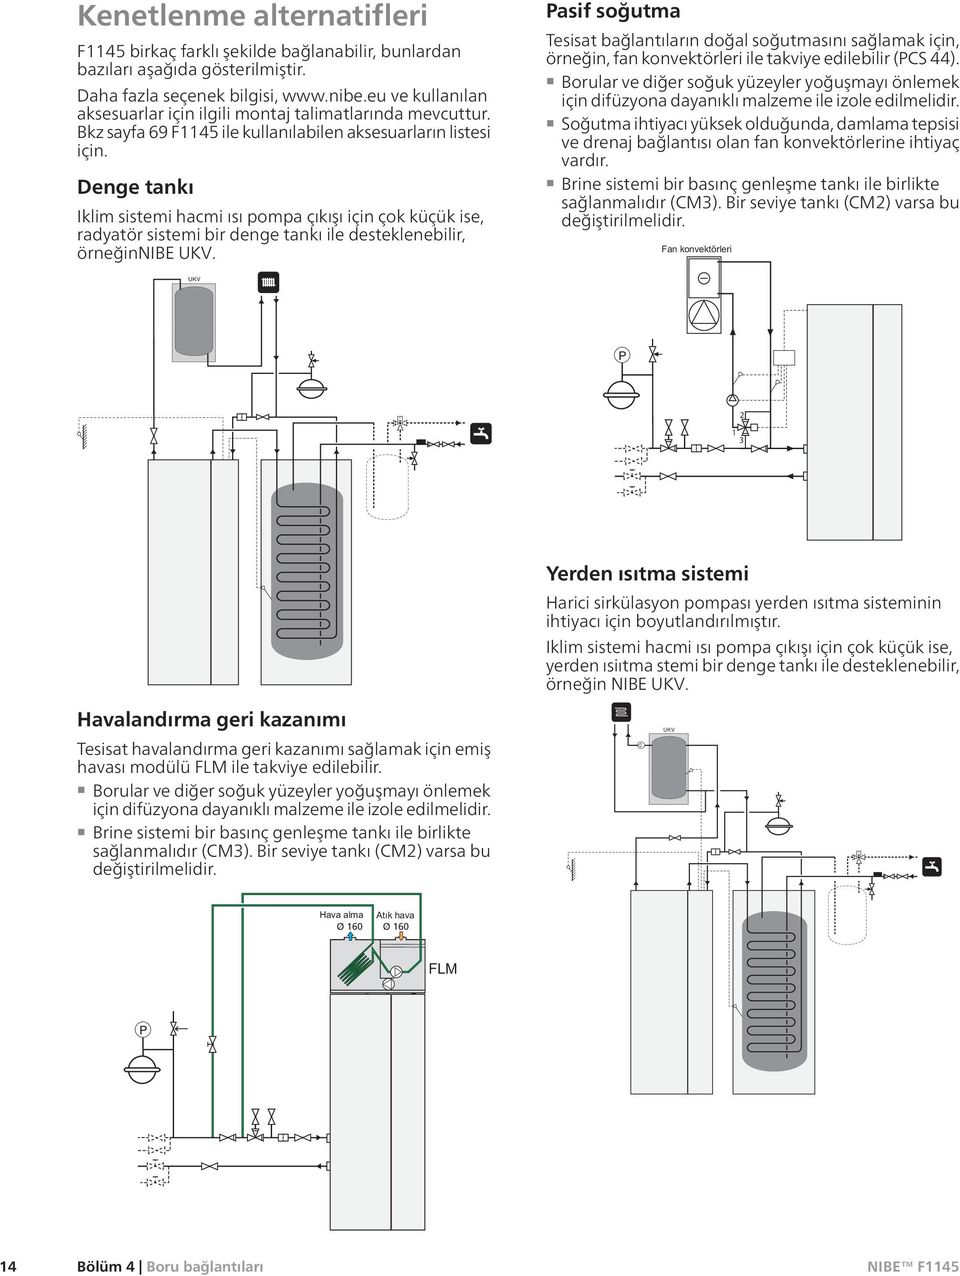 Denge tankı Iklim sistemi hacmi ısı pompa çıkışı için çok küçük ise, radyatör sistemi bir denge tankı ile desteklenebilir, örneğinnibe UKV.